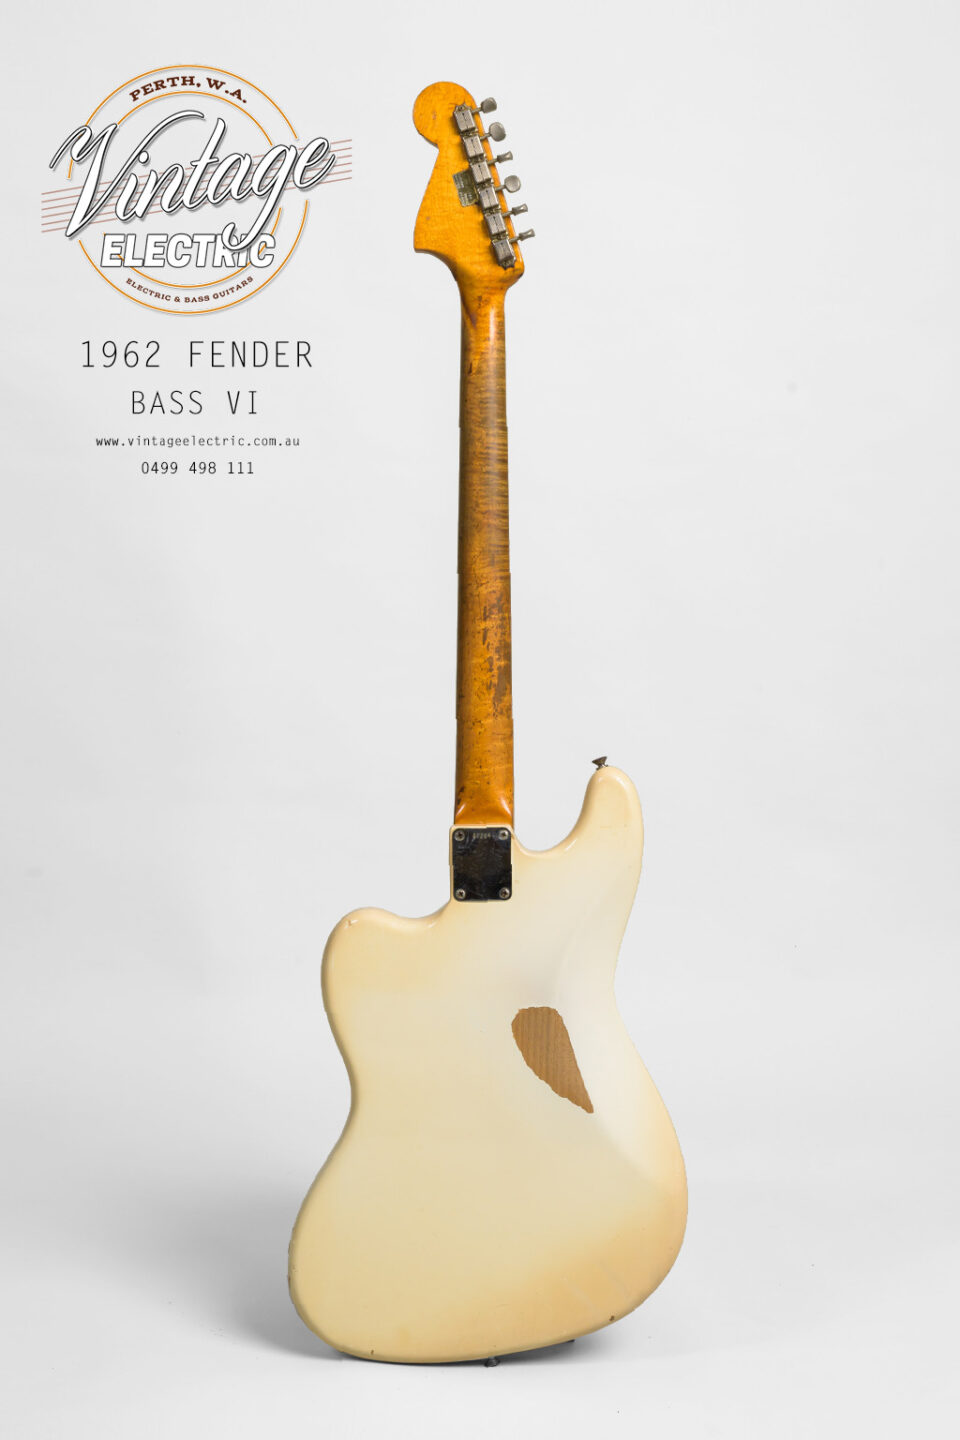 1962 Fender Bass VI Back of Bass